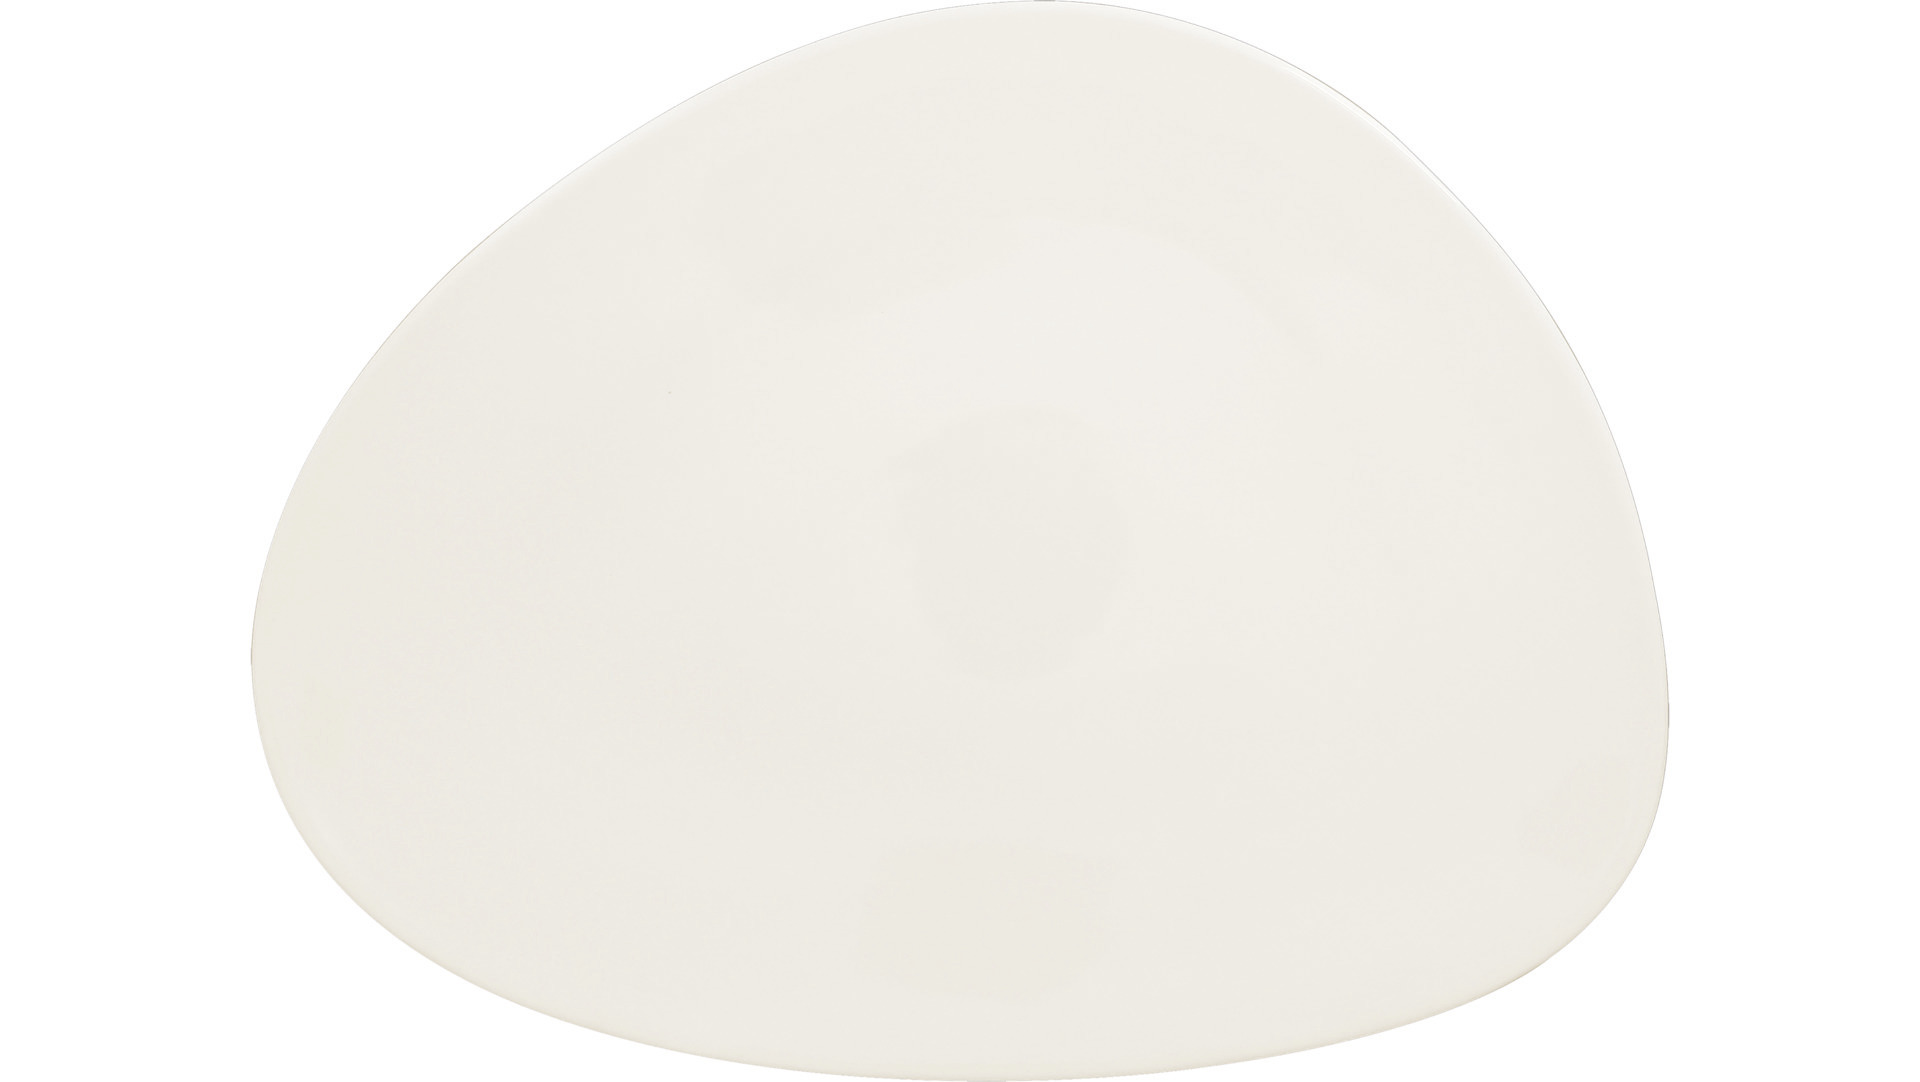 Teller flach shaped 330 x 250 mm plain-white